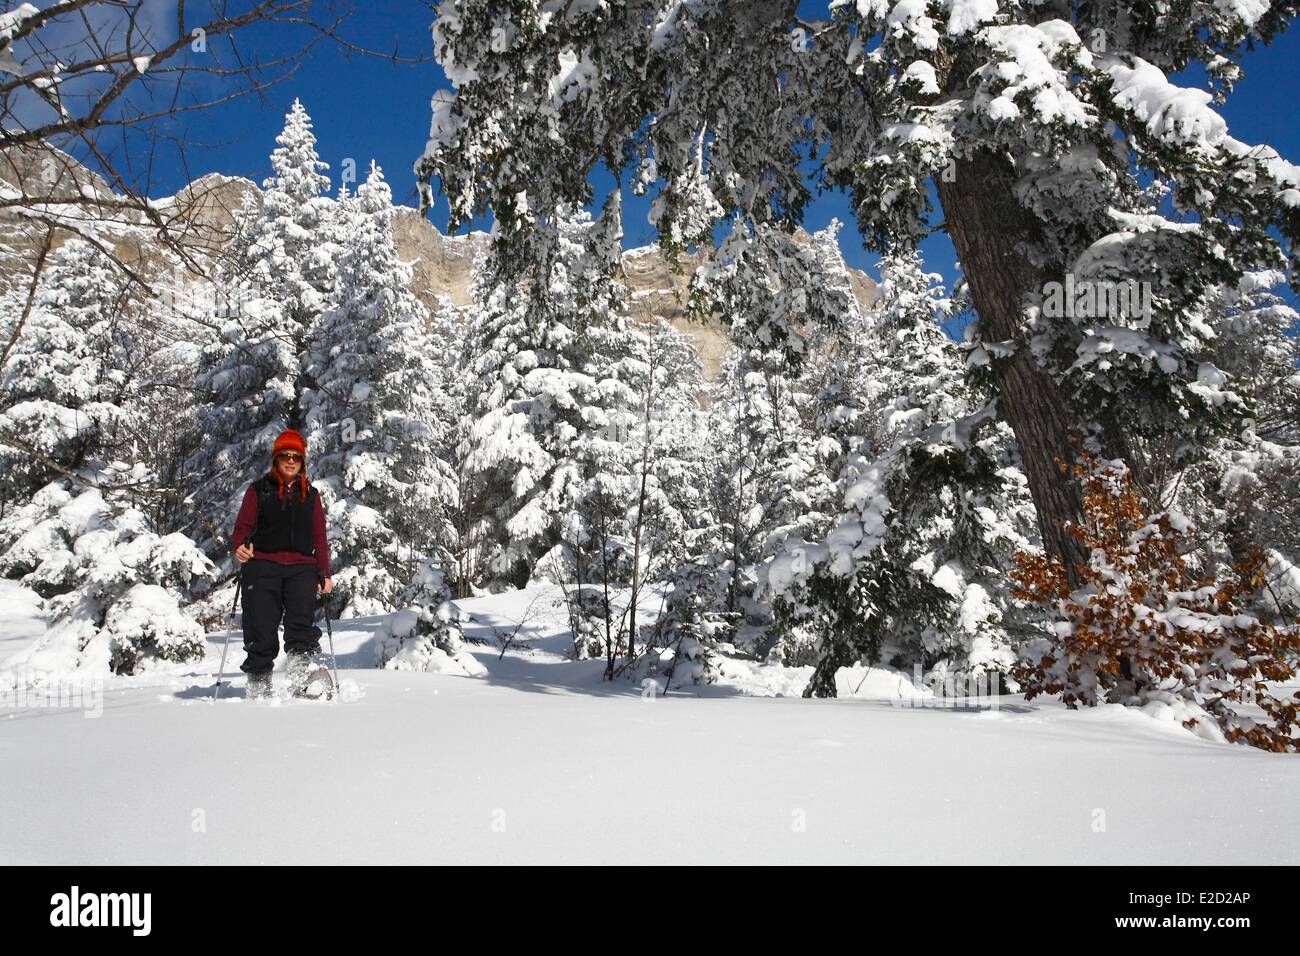 France Drome Parc Naturel Régional du Vercors (Parc Naturel Régional du Vercors) lus la Croix Haute Jarjatte ski resort Banque D'Images